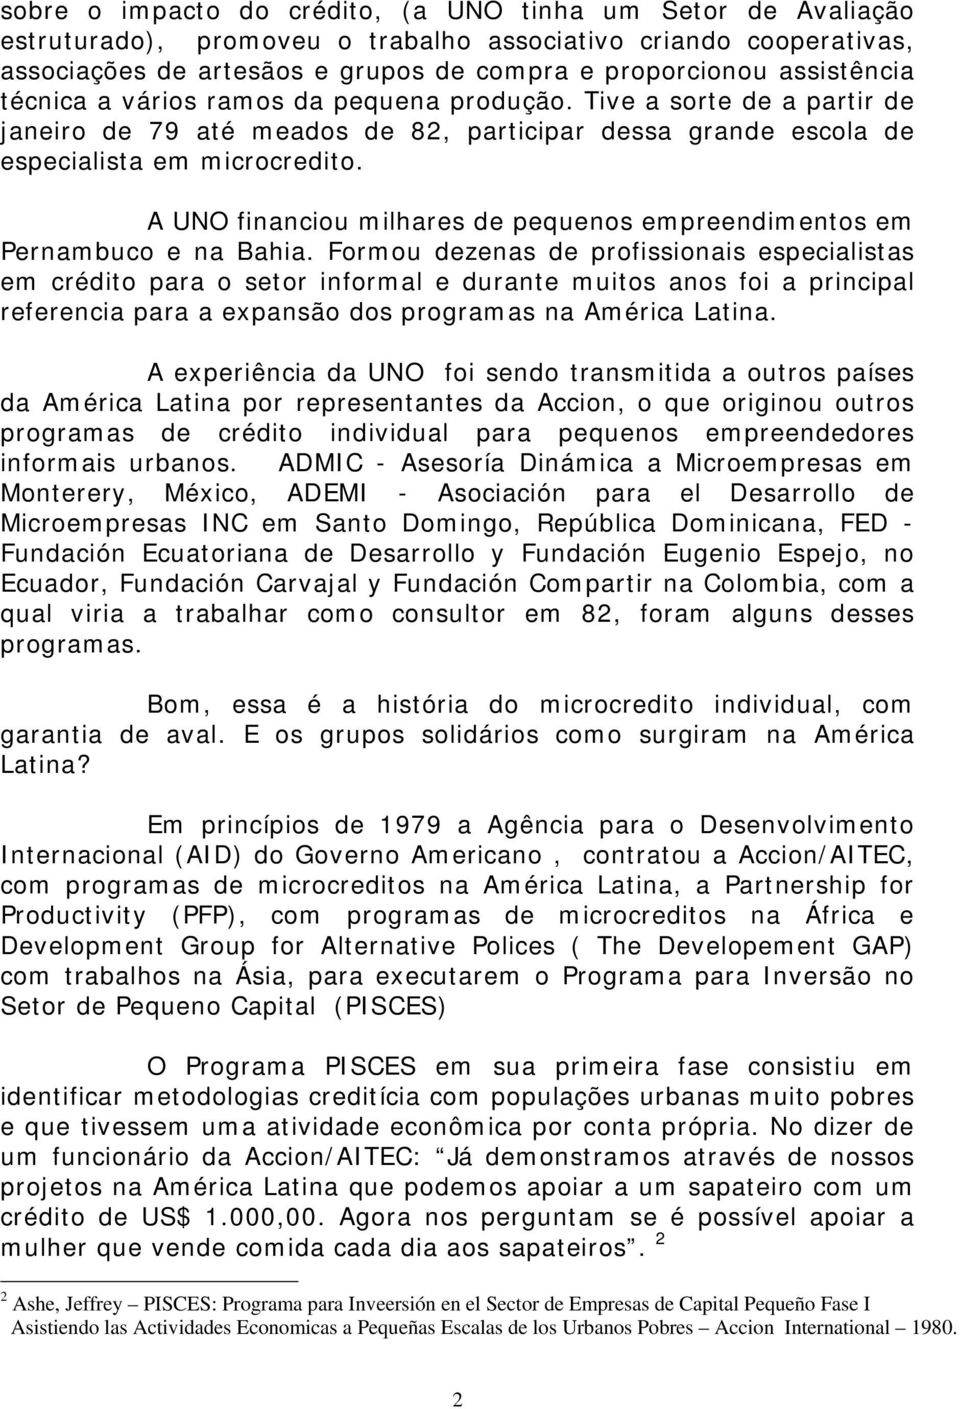 A UNO financiou milhares de pequenos empreendimentos em Pernambuco e na Bahia.